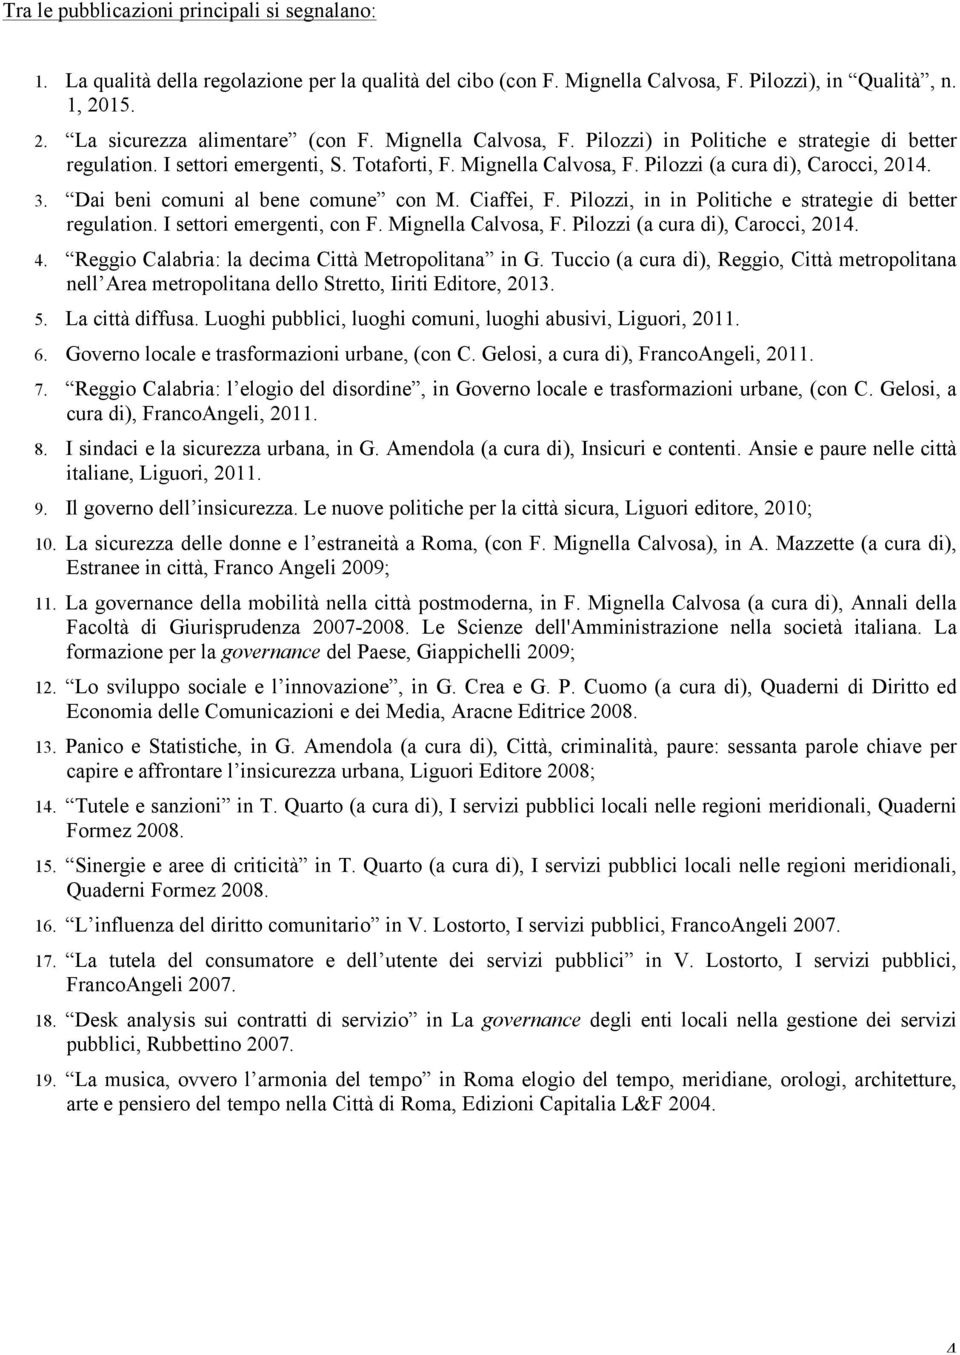 Dai beni comuni al bene comune con M. Ciaffei, F. Pilozzi, in in Politiche e strategie di better regulation. I settori emergenti, con F. Mignella Calvosa, F. Pilozzi (a cura di), Carocci, 2014. 4.